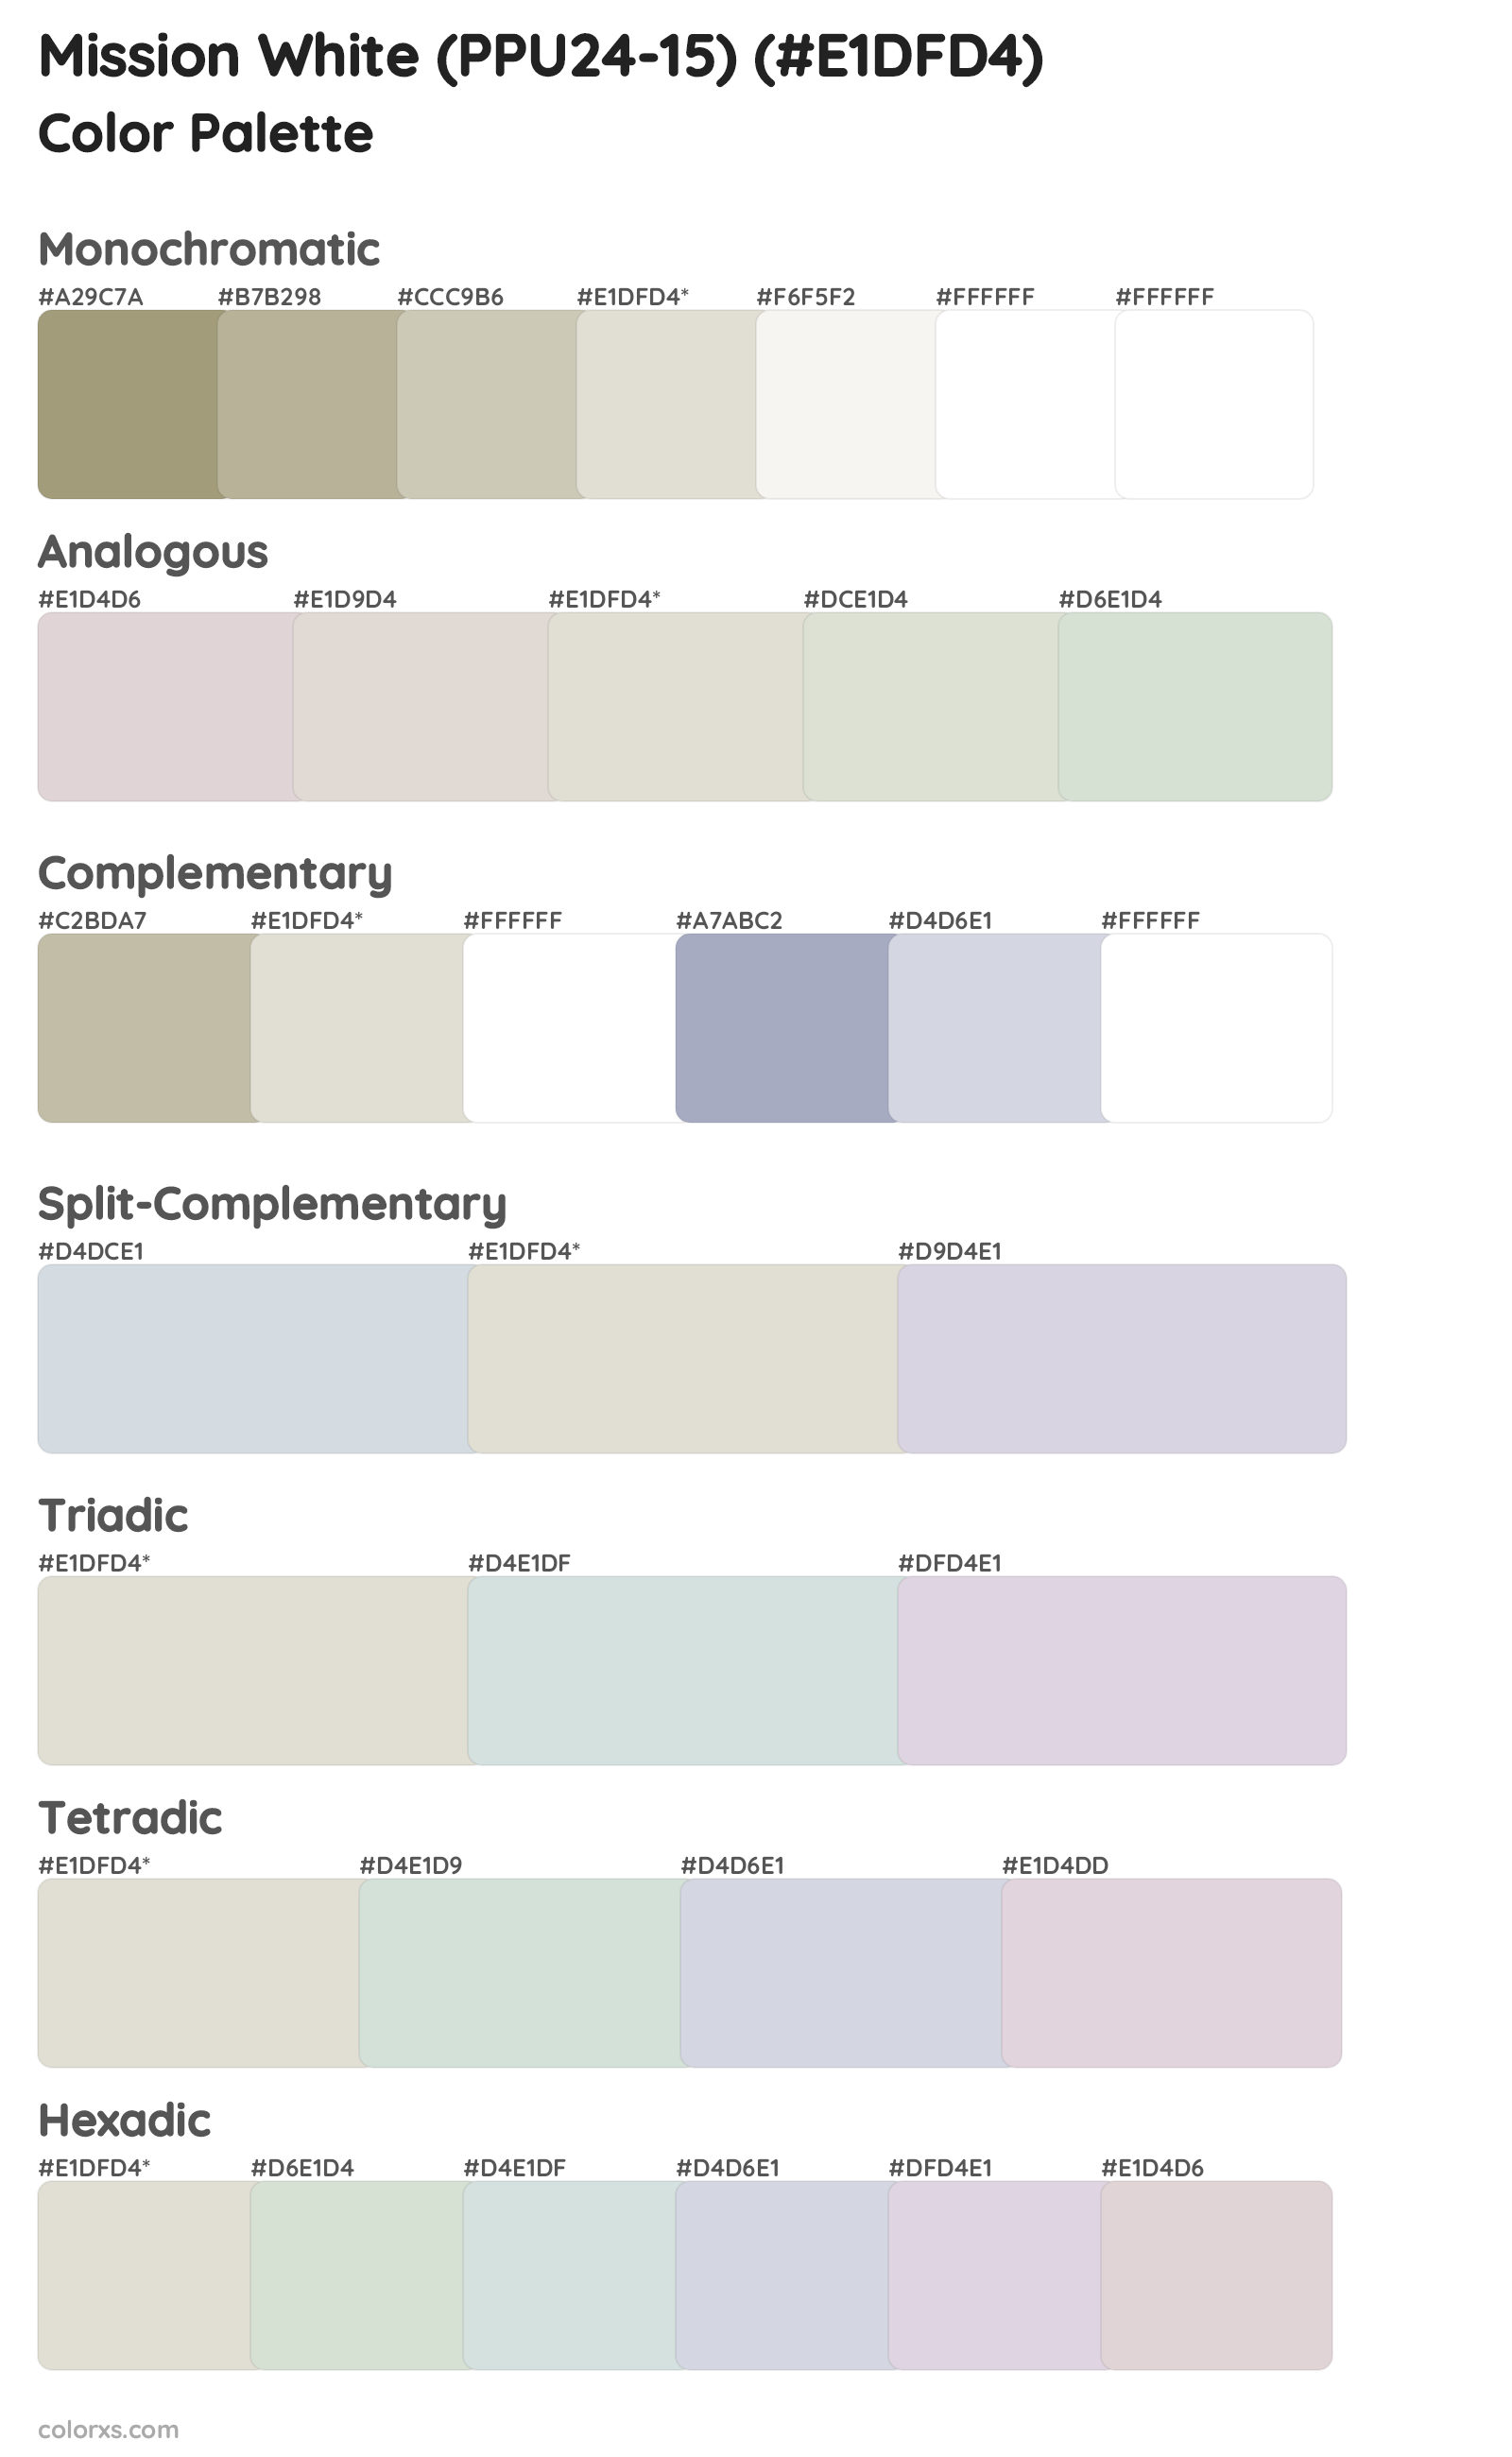 Mission White (PPU24-15) Color Scheme Palettes